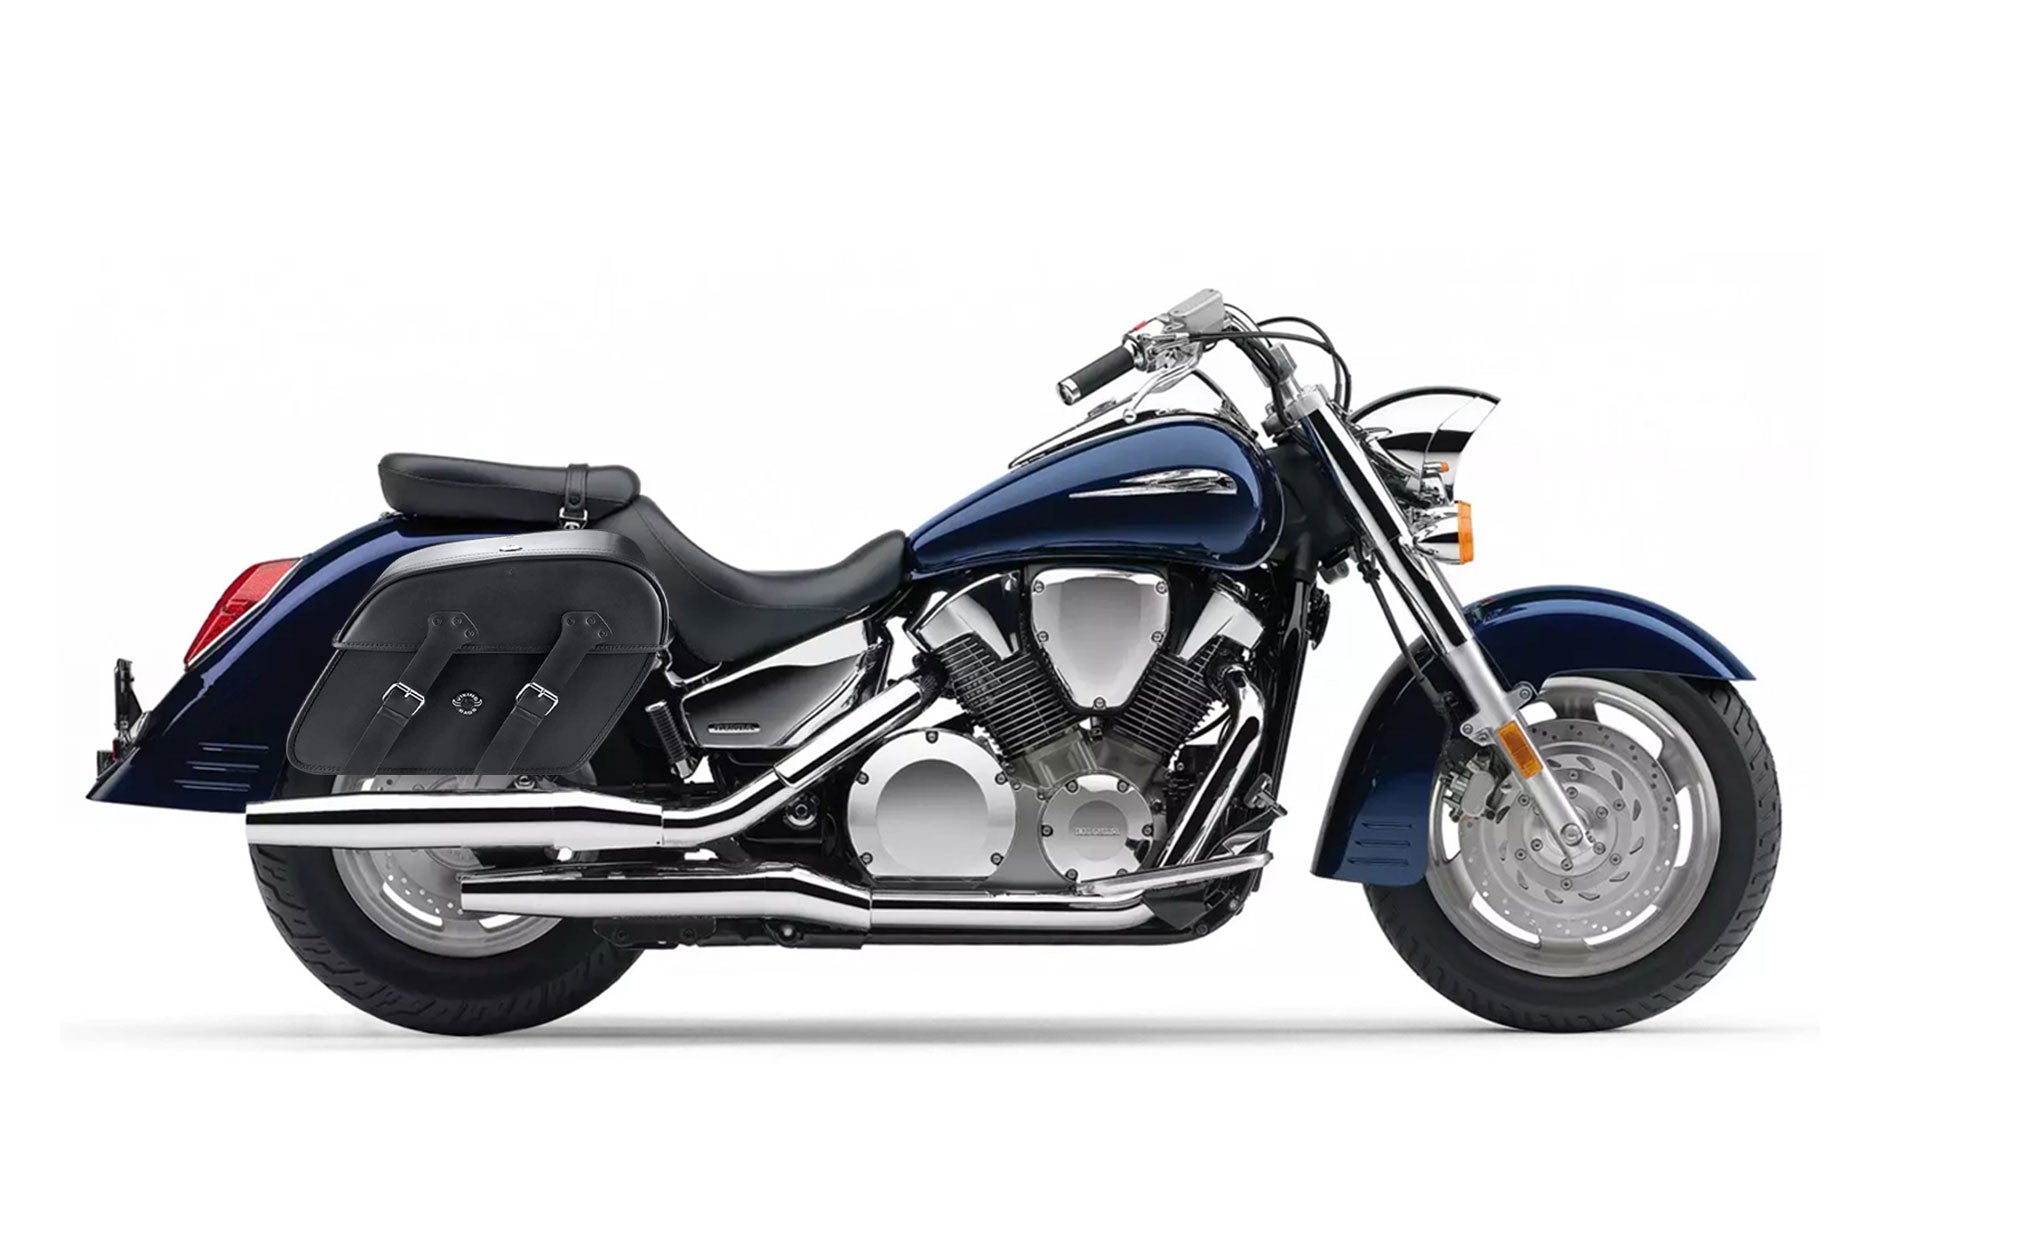 Viking Raven Extra Large Honda Vtx 1300 R Retro Shock Cut Out Leather Motorcycle Saddlebags on Bike Photo @expand